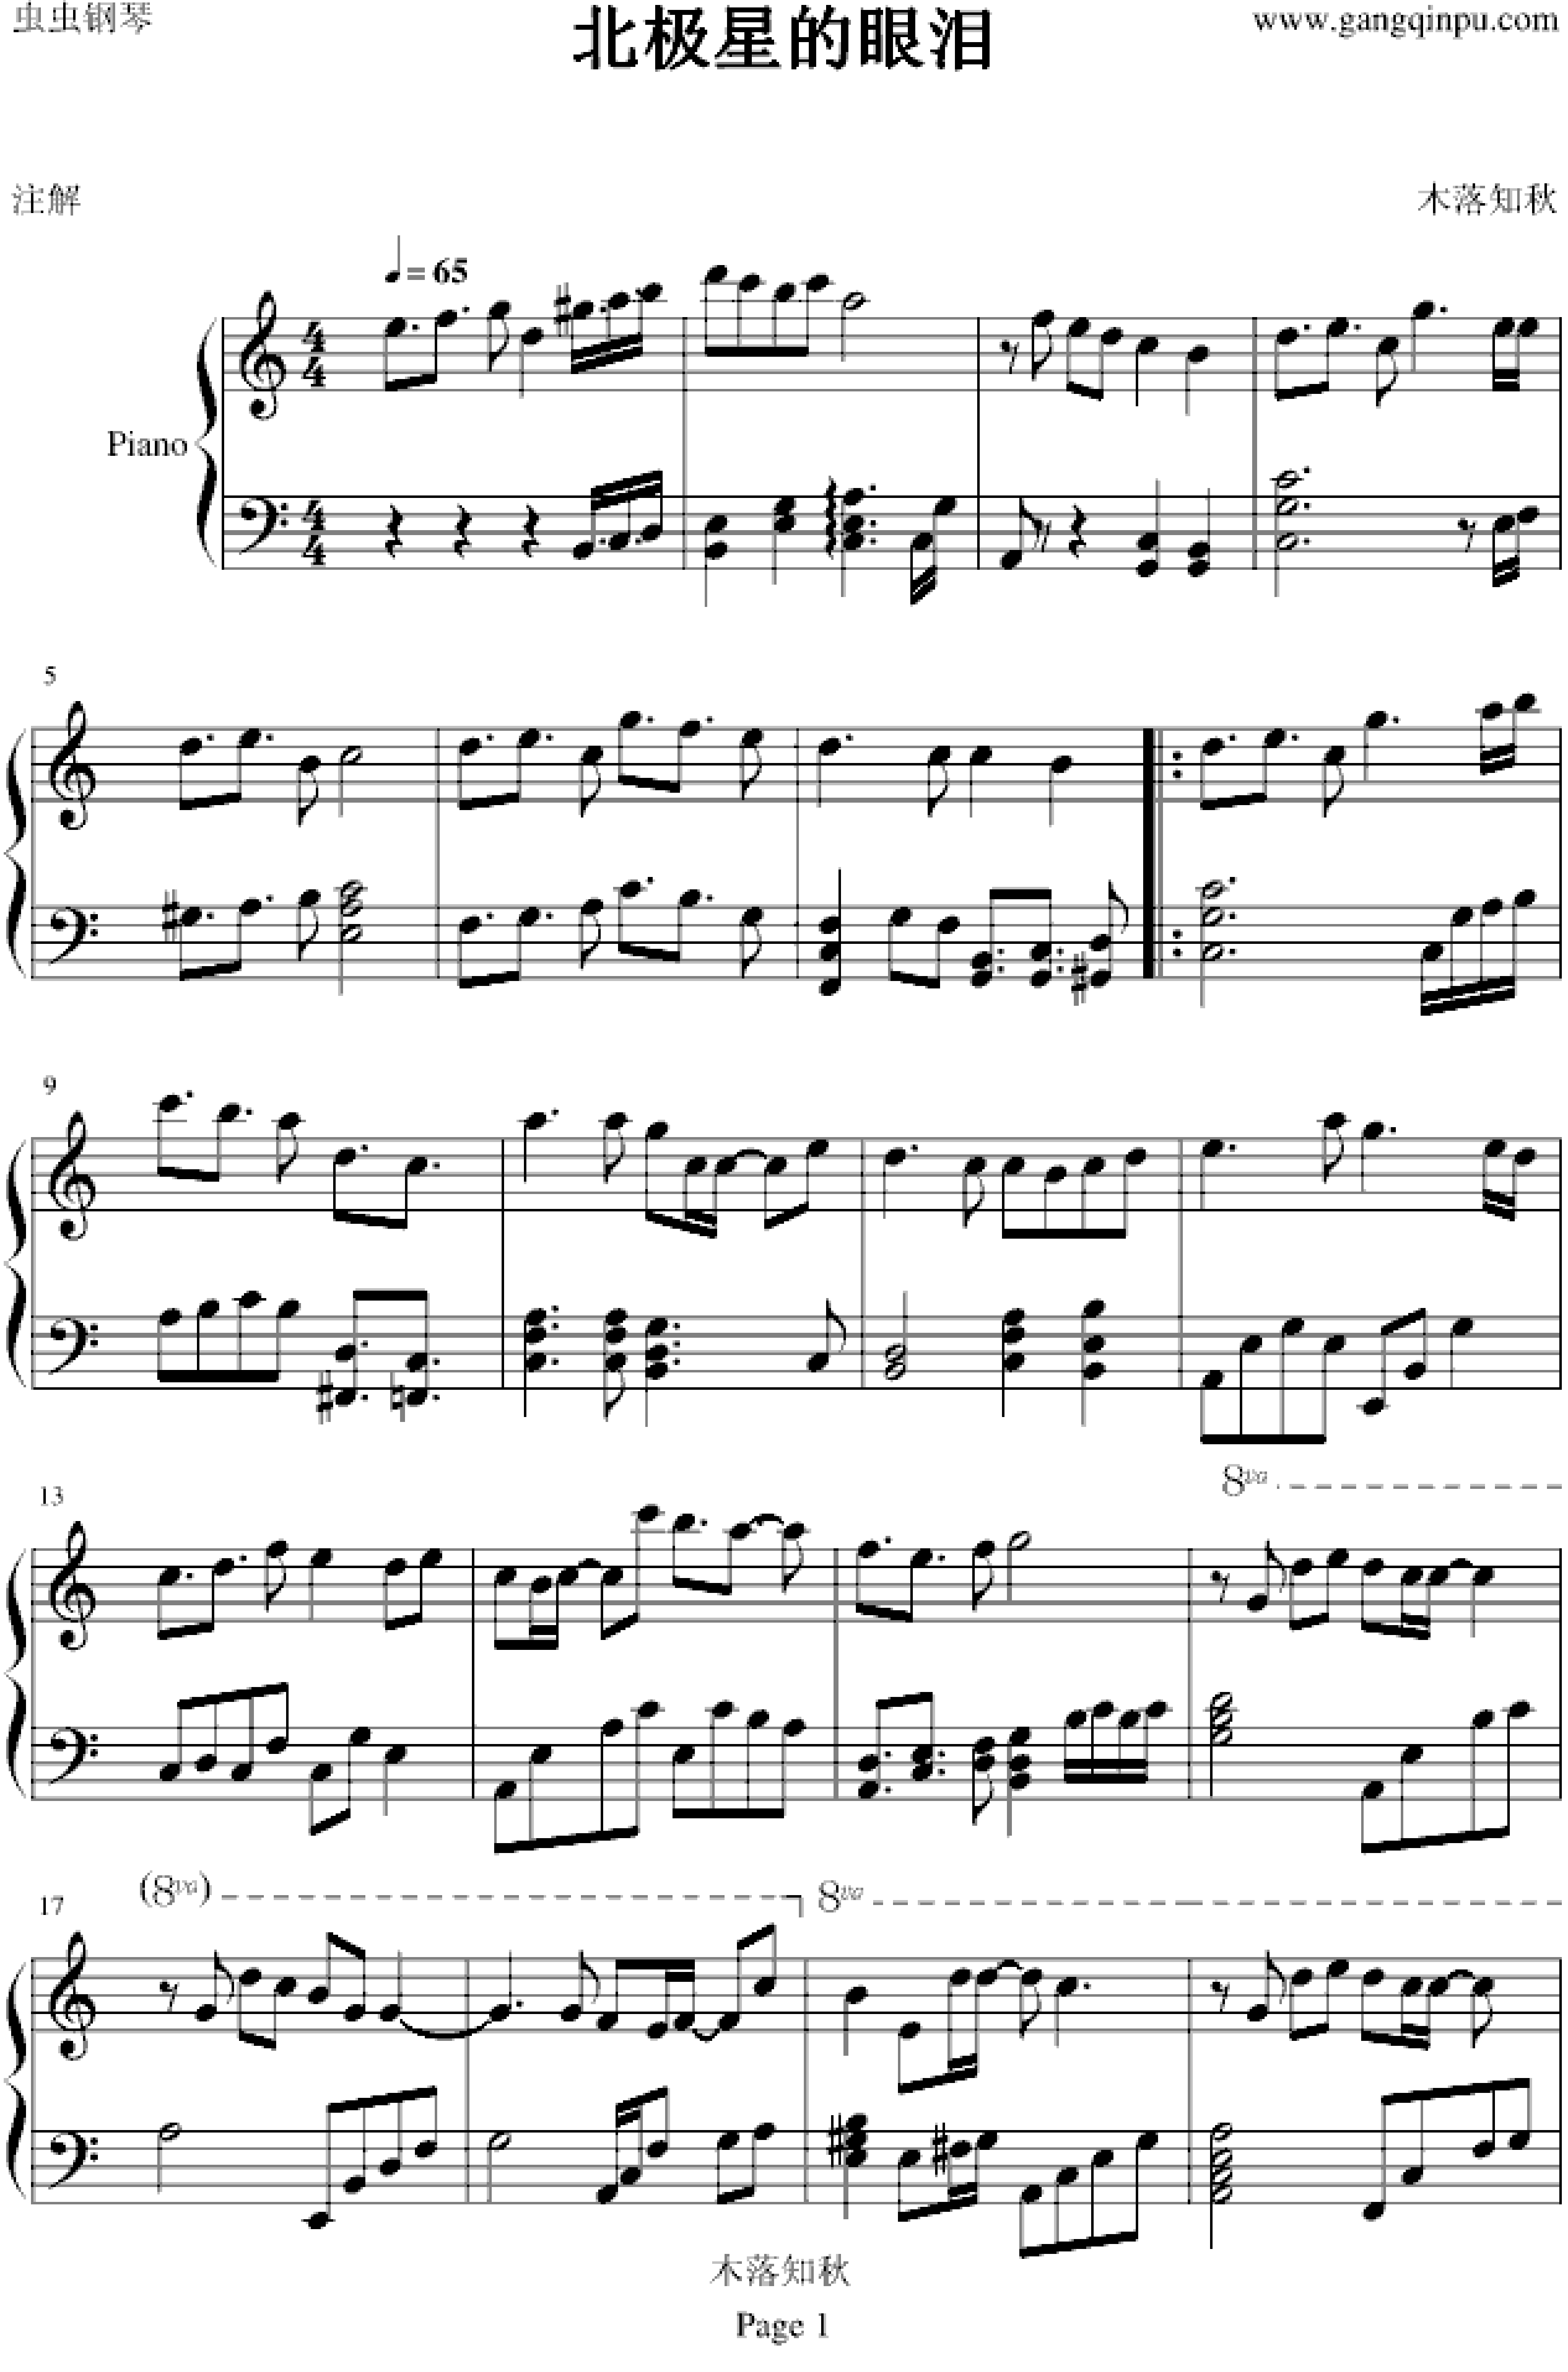 北极星的眼泪-微笑PASTA背景音乐五线谱预览2-钢琴谱文件（五线谱、双手简谱、数字谱、Midi、PDF）免费下载